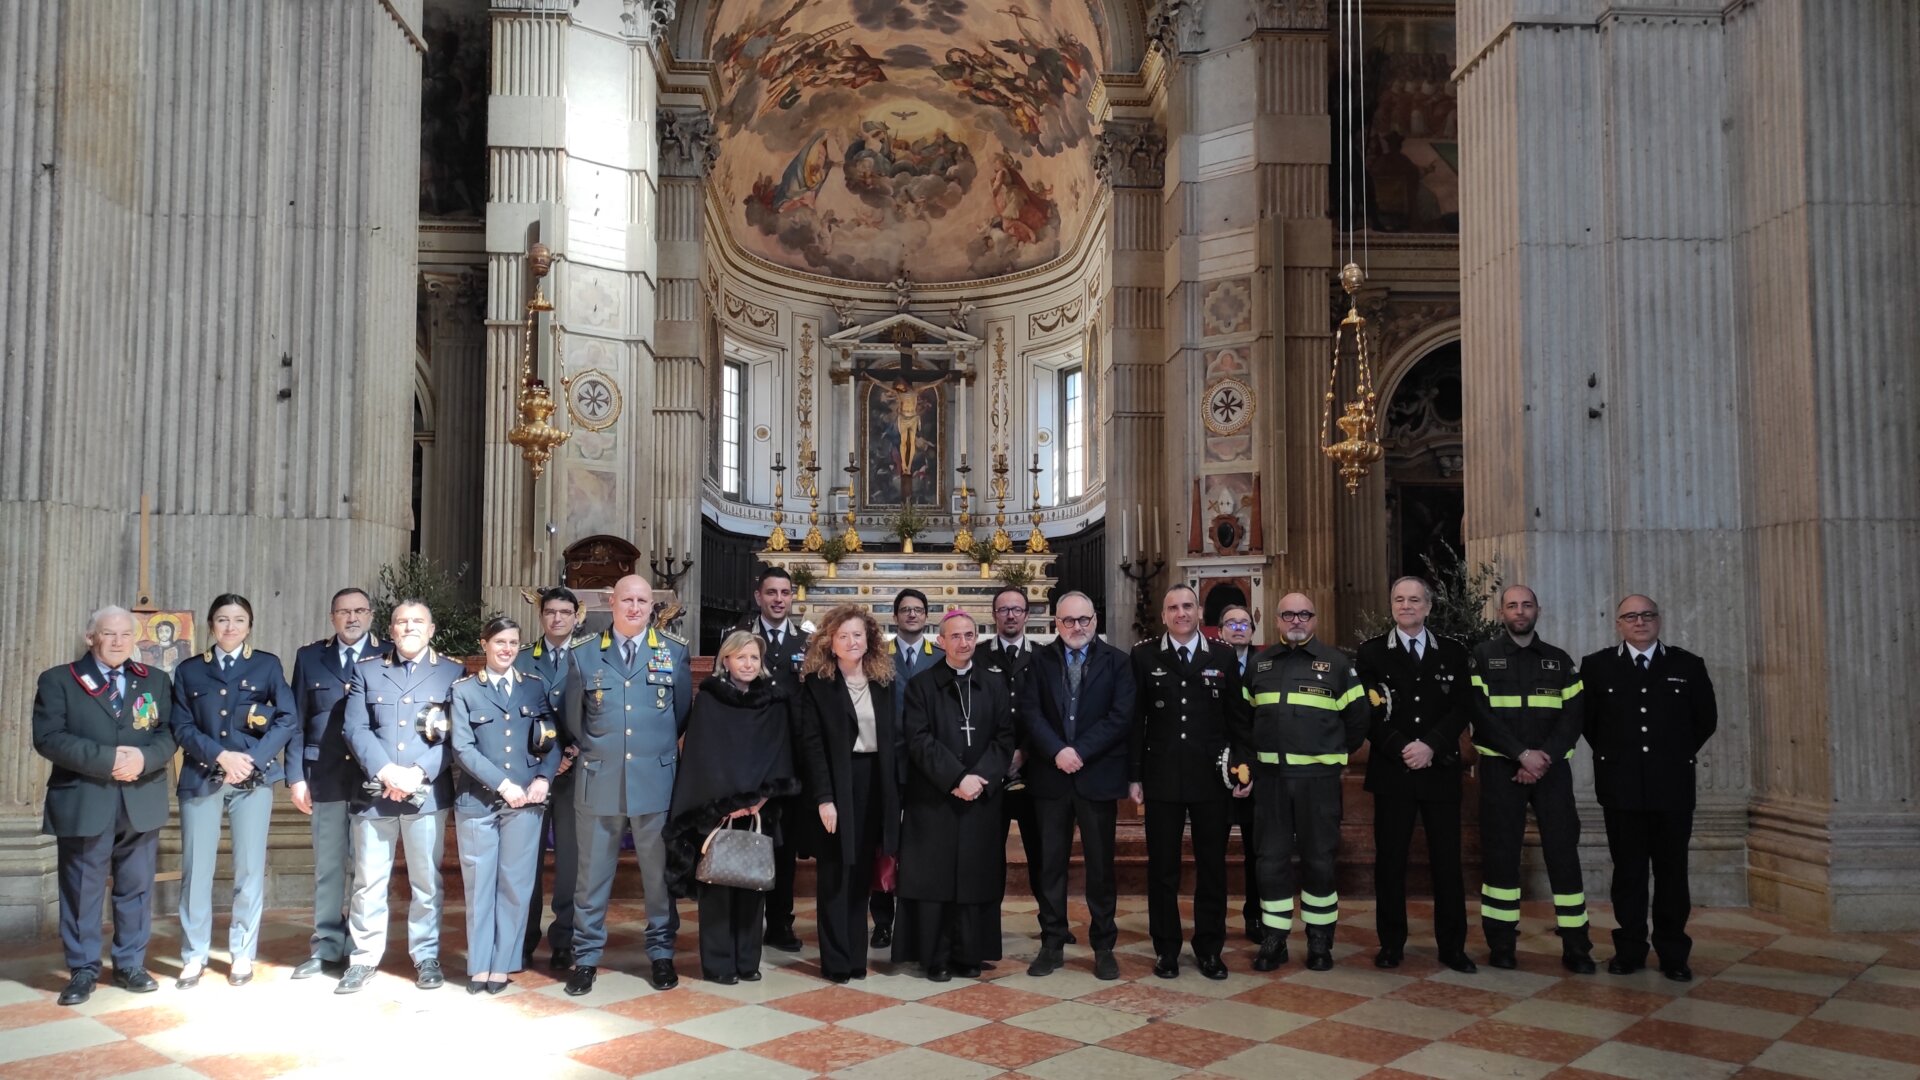 Le forze dell'ordine e le associazioni che hanno preso parte al precetto pasquale nel duomo di Mantova